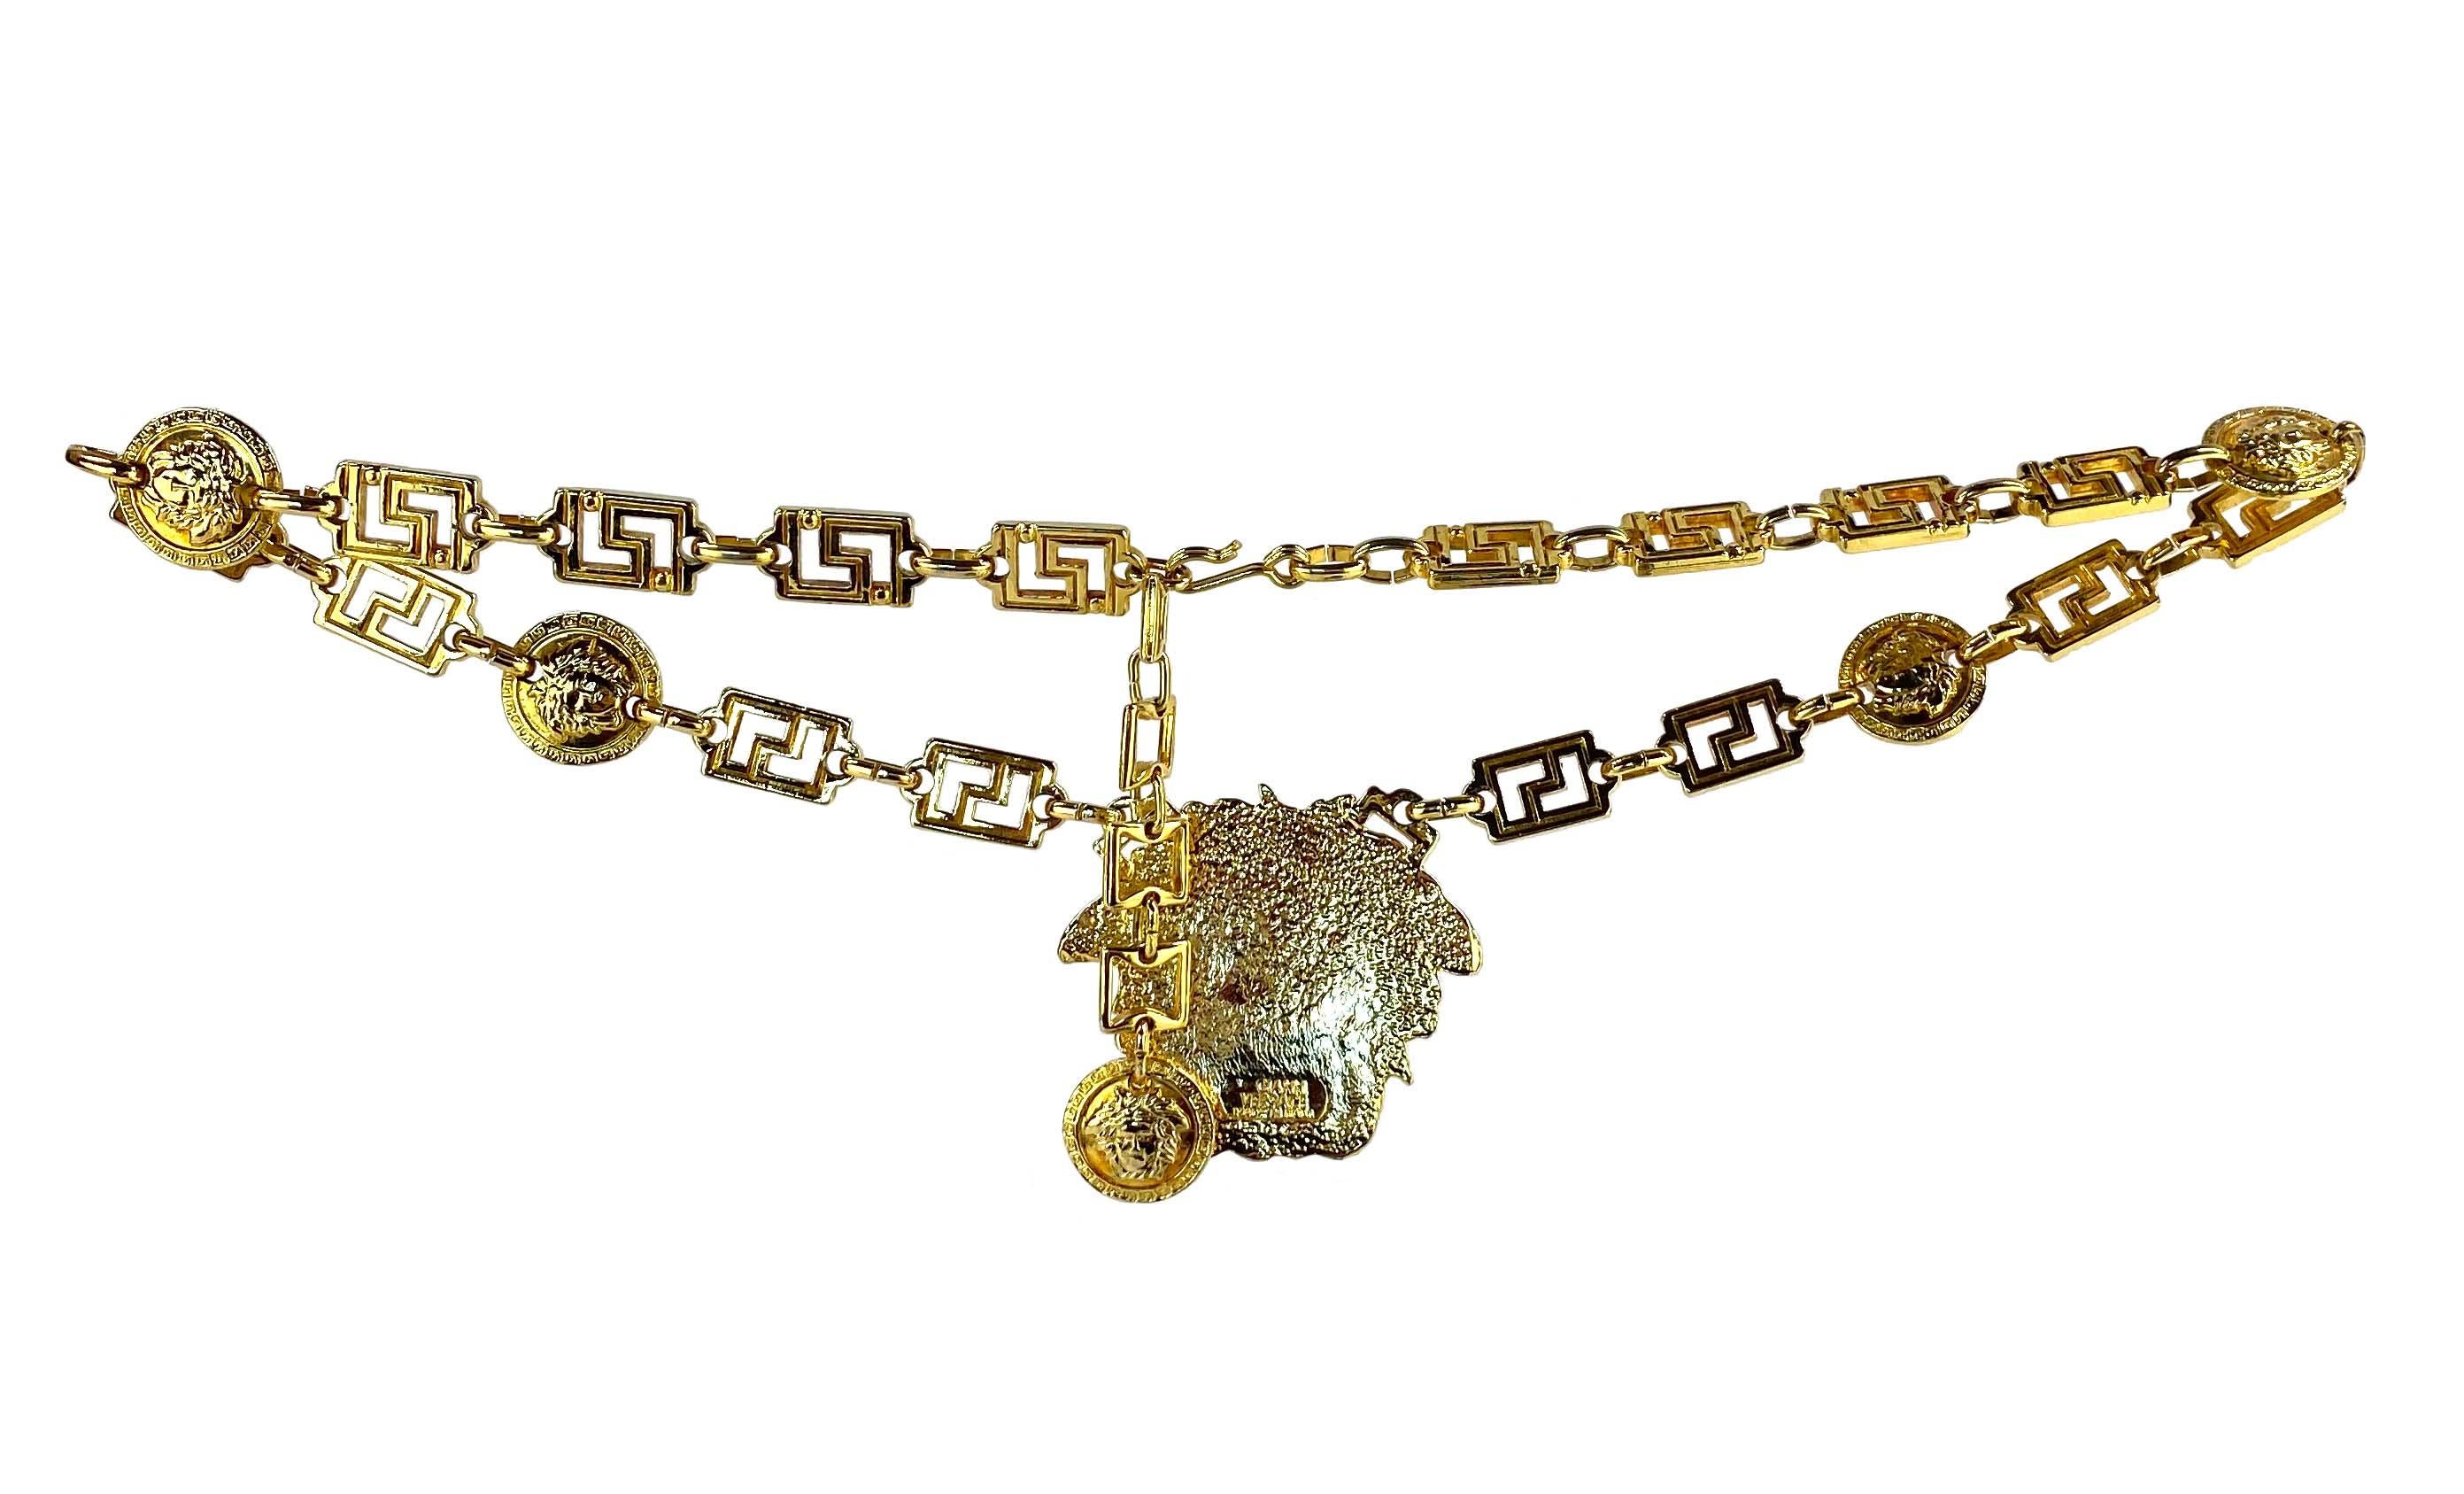 Wir präsentieren einen atemberaubenden goldenen Medusa Greek Key Gianni Versace Kettengürtel/Halskette, entworfen von Gianni Versace. Dieser atemberaubende Gürtel ist aus goldfarbenem Metall gefertigt und verfügt über einen griechischen